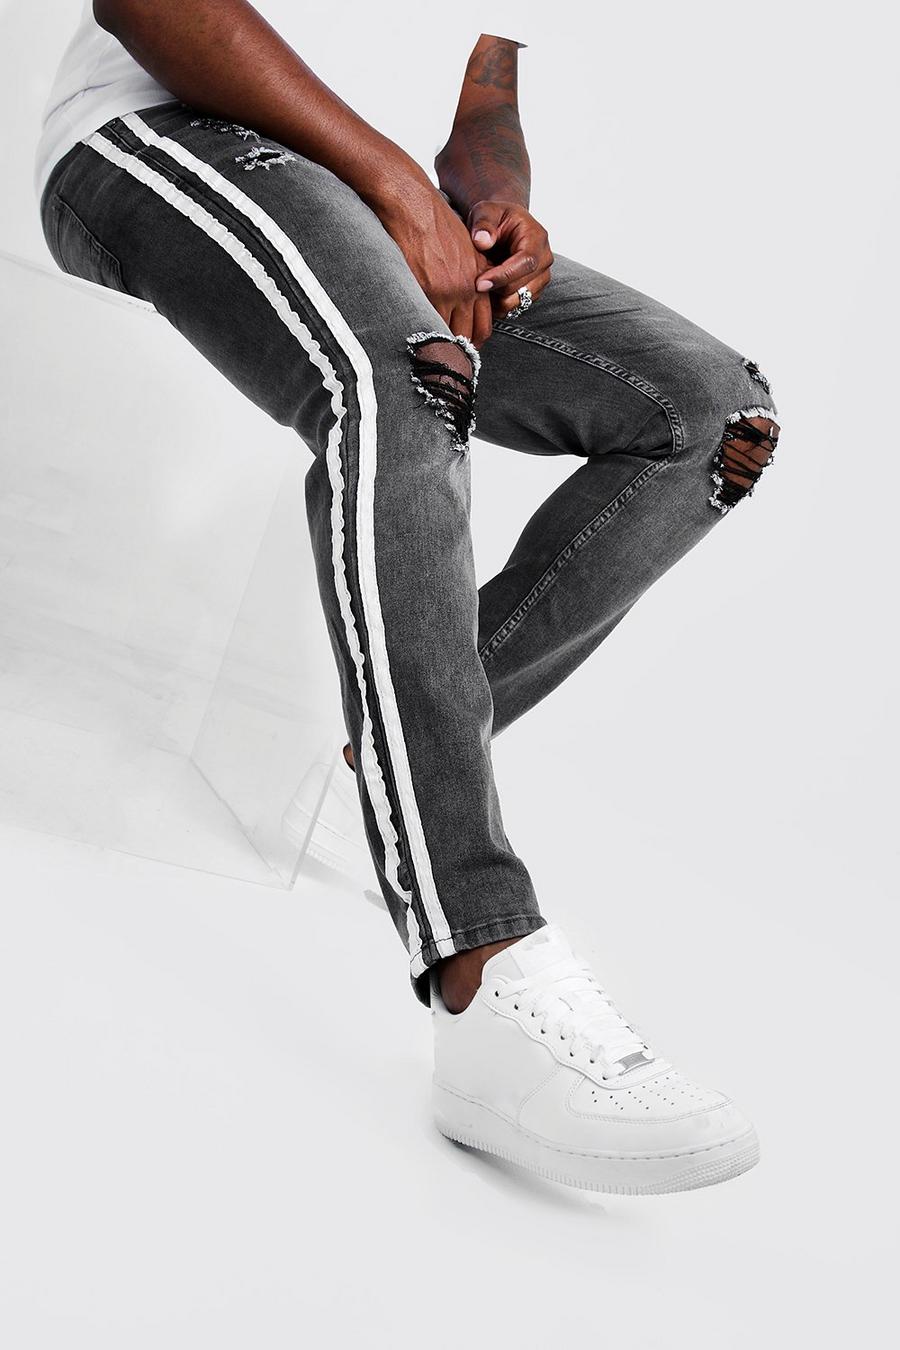 אפור grigio סקיני ג'ינס עם קרעים לגברים גדולים וגבוהים